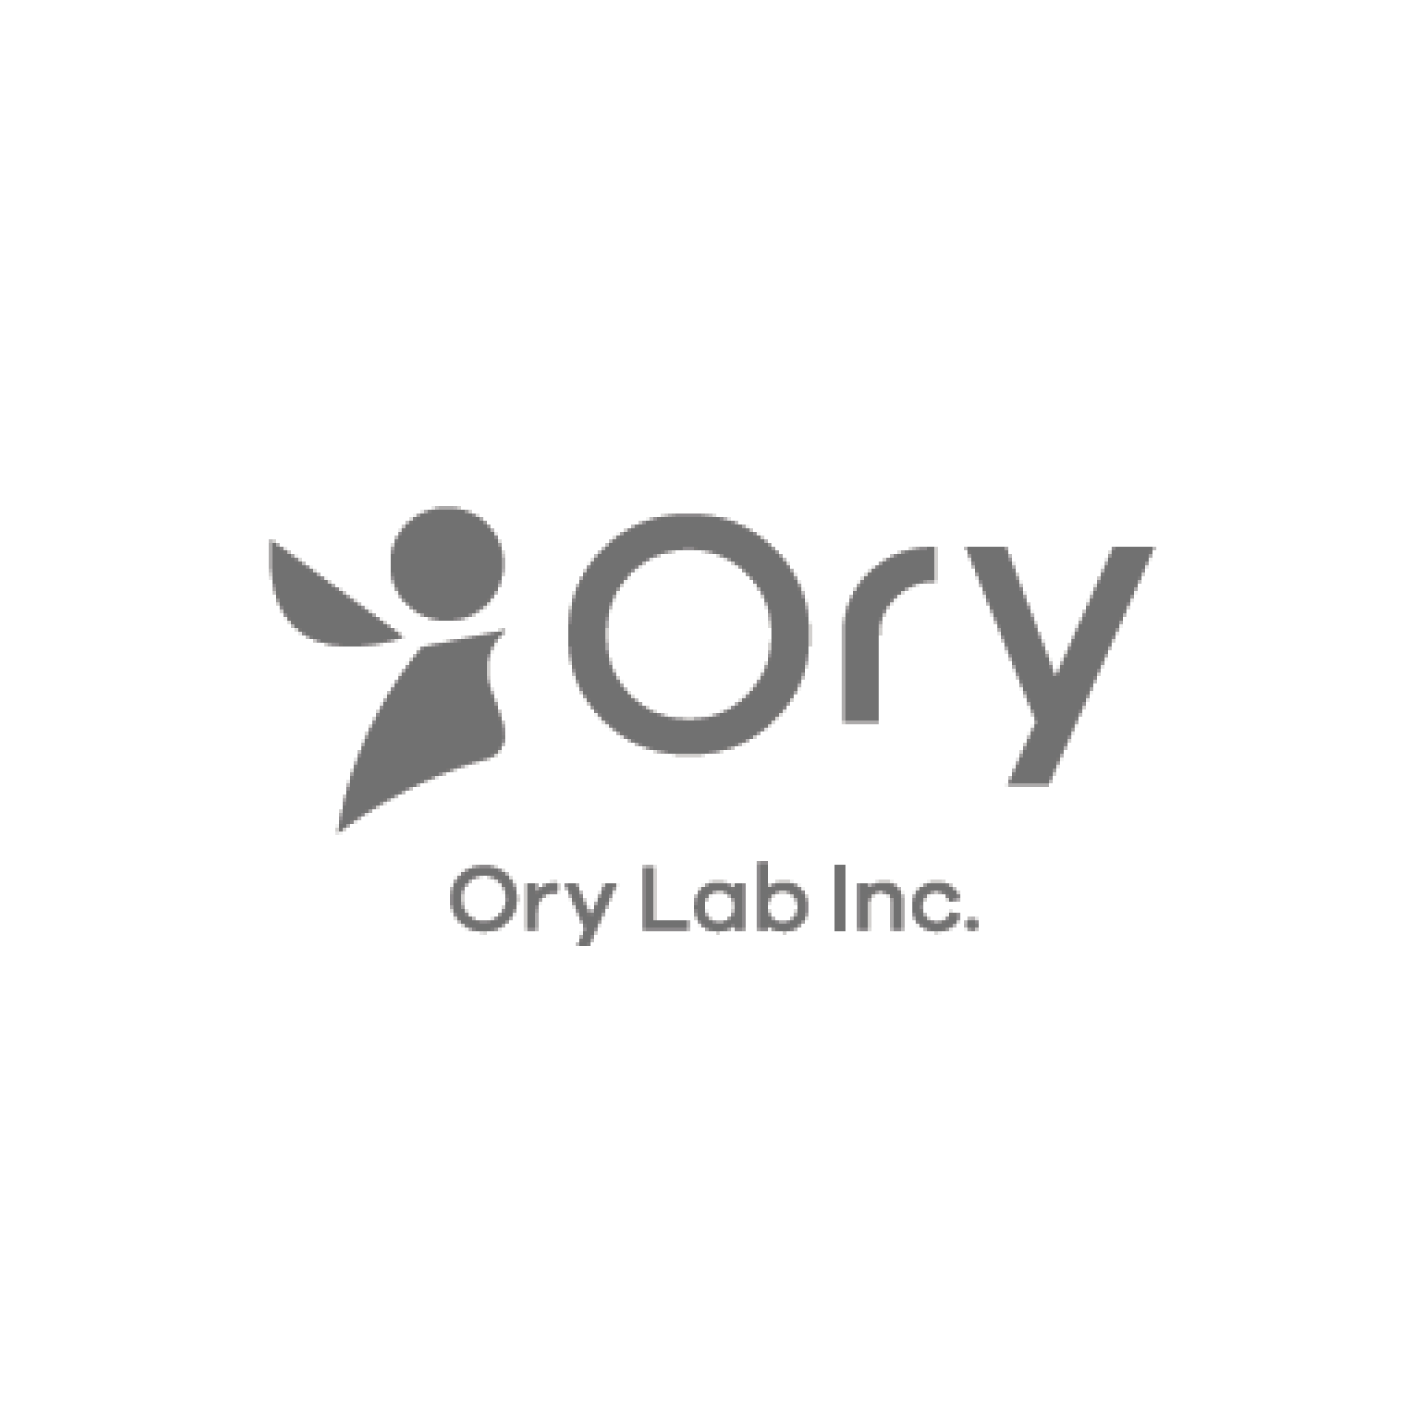 OryLab Inc.